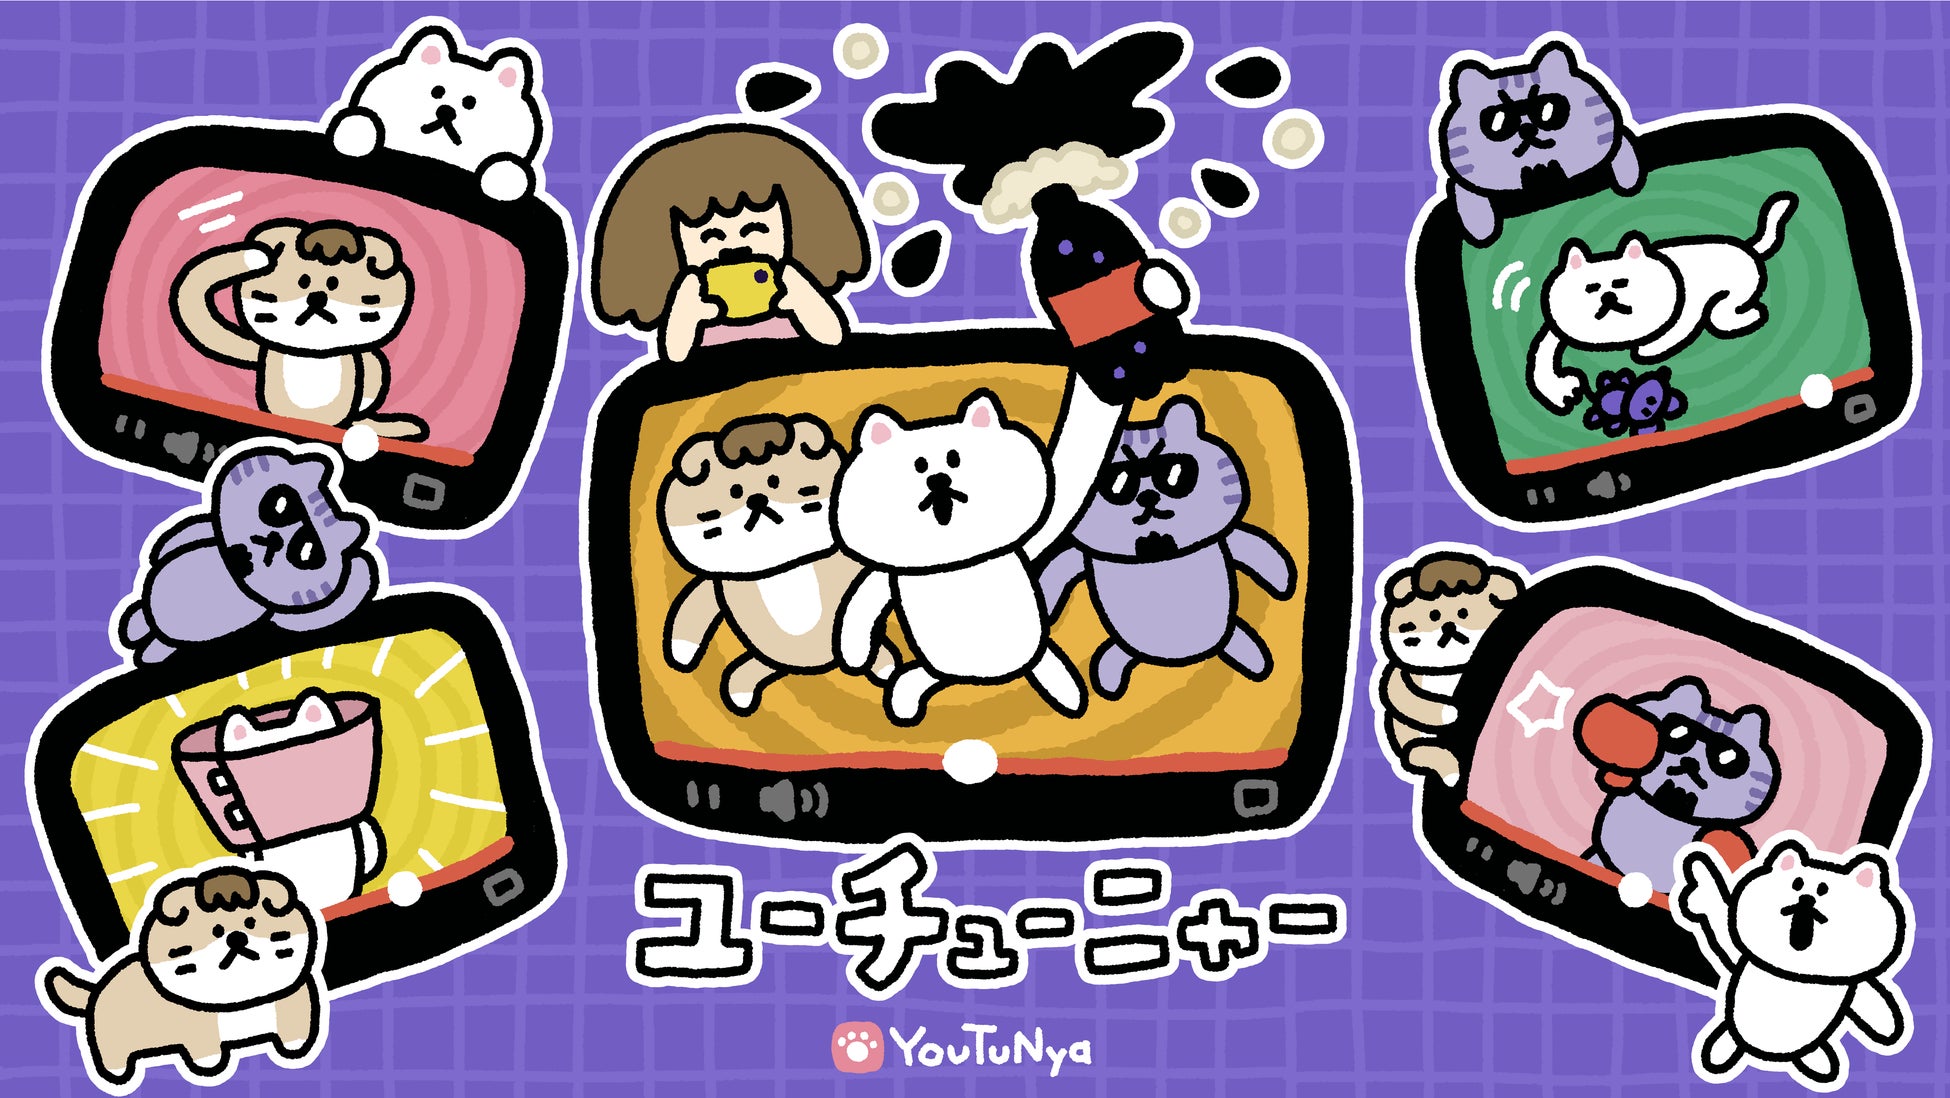 2023年7月放送TVアニメ『デキる猫は今日も憂鬱』織塚 馨役の小西克幸さんよりキャストコメント到着!